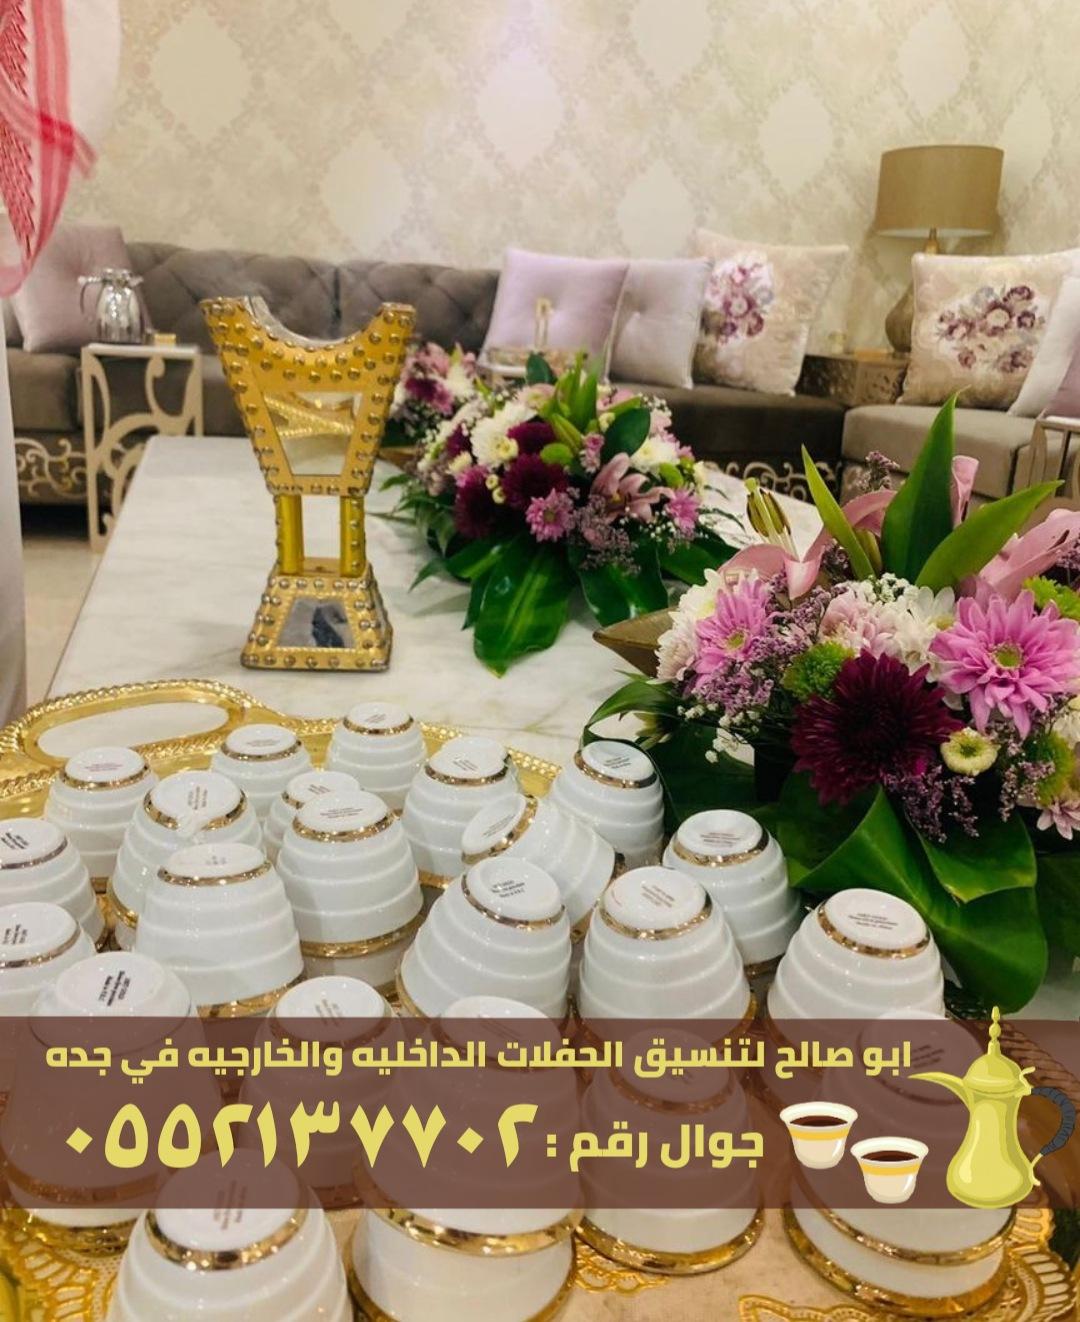 ضيافة قهوة و شاي في جدة,0552137702 403261284